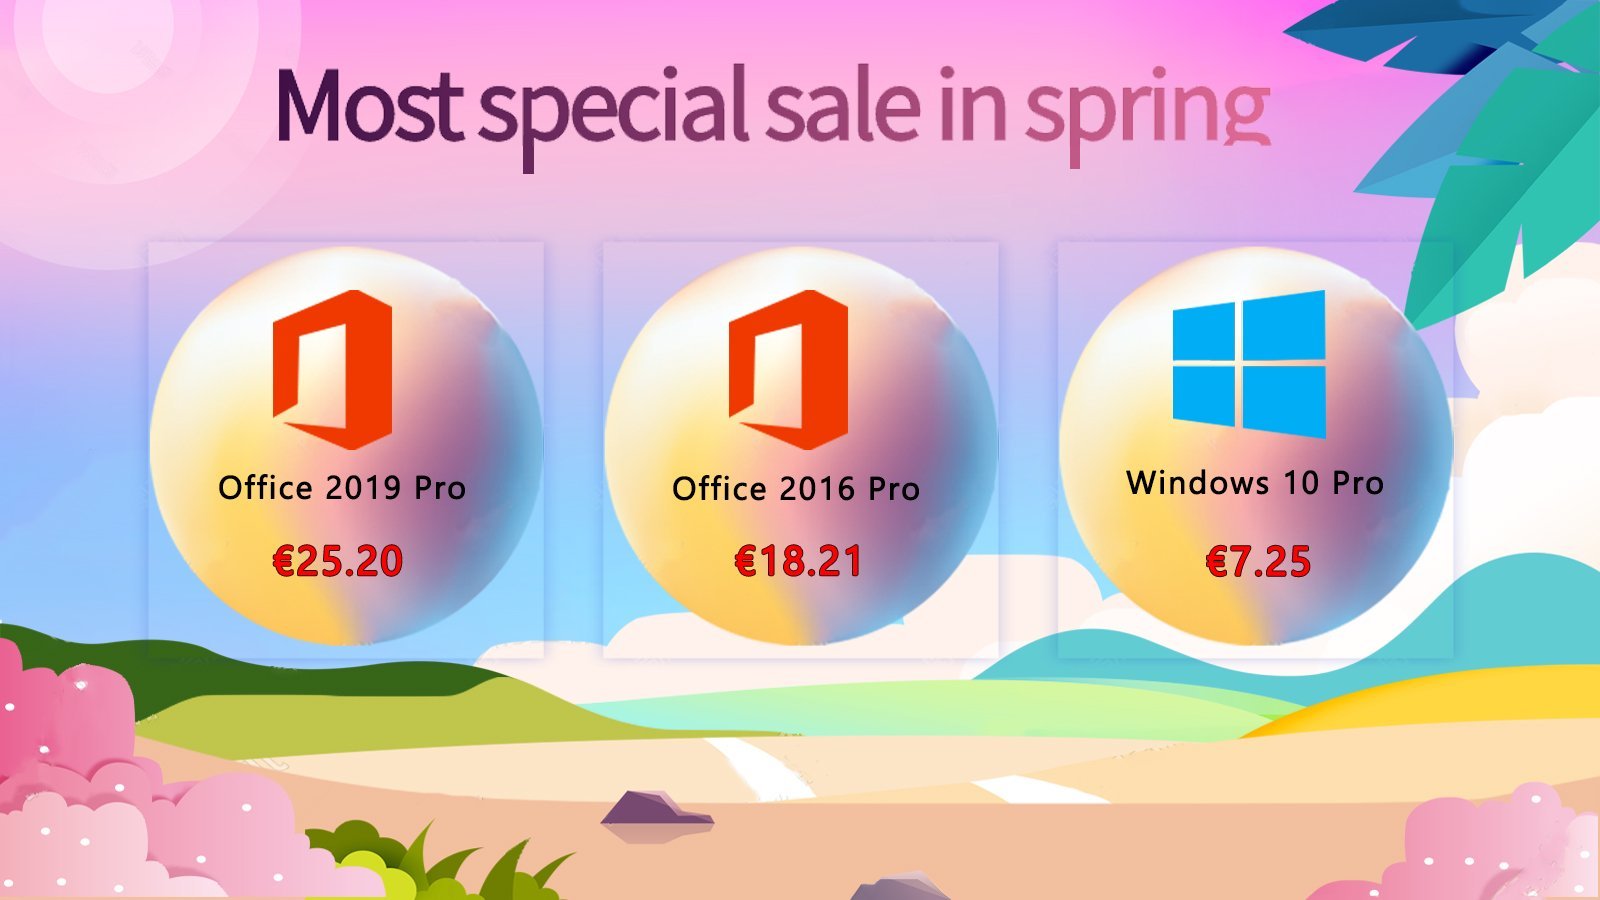 [Offres spéciales de printemps] Prix imbattables sur Windows 10 Pro à 7,25€, Office 2019 Pro à 25,20€